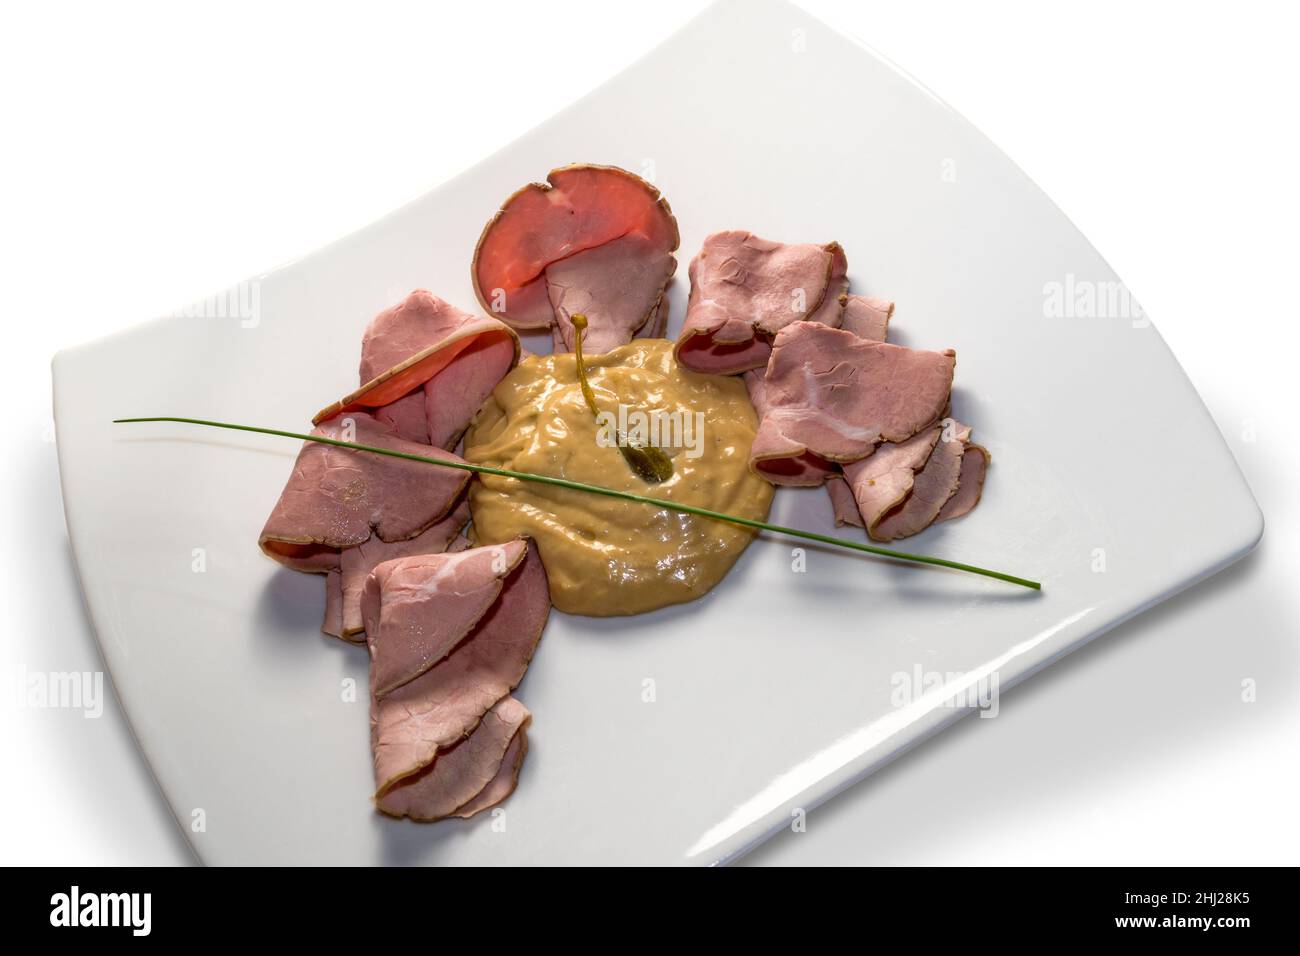 Vitello tonnato, rôti de bœuf italien typique du Piémont avec câpres marinées, tranches de veau, sauce mayonnaise avec thon dans un plat blanc isolé sur blanc Banque D'Images